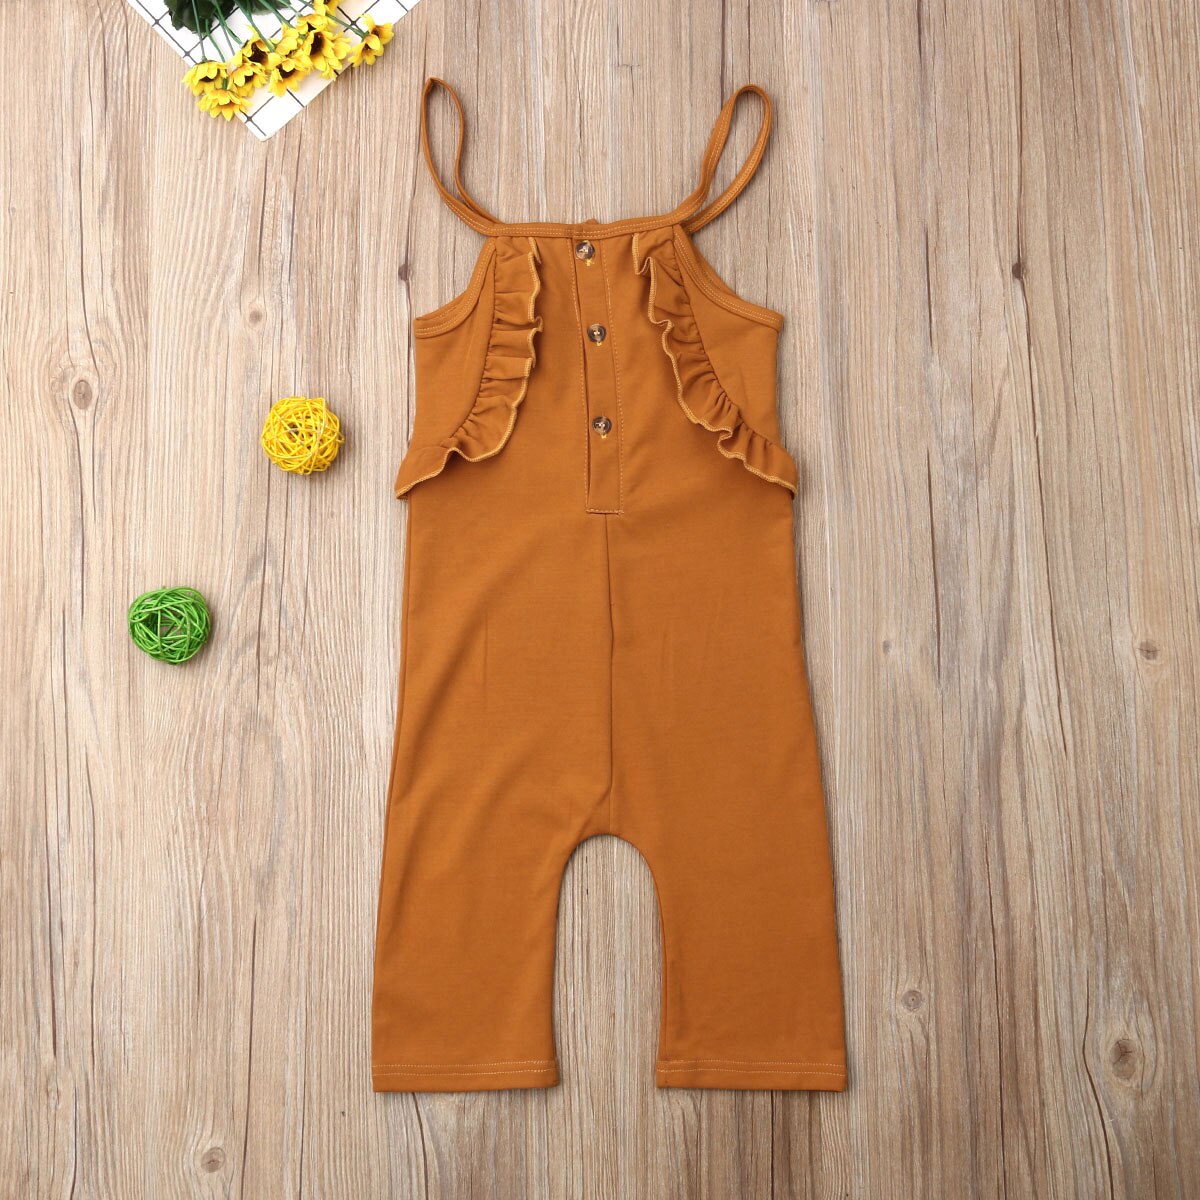 Toddler børn baby pige sommer tøj flæse romper jumpsuit overalls tøj roupa infantil tøj kostume vestidos: 6